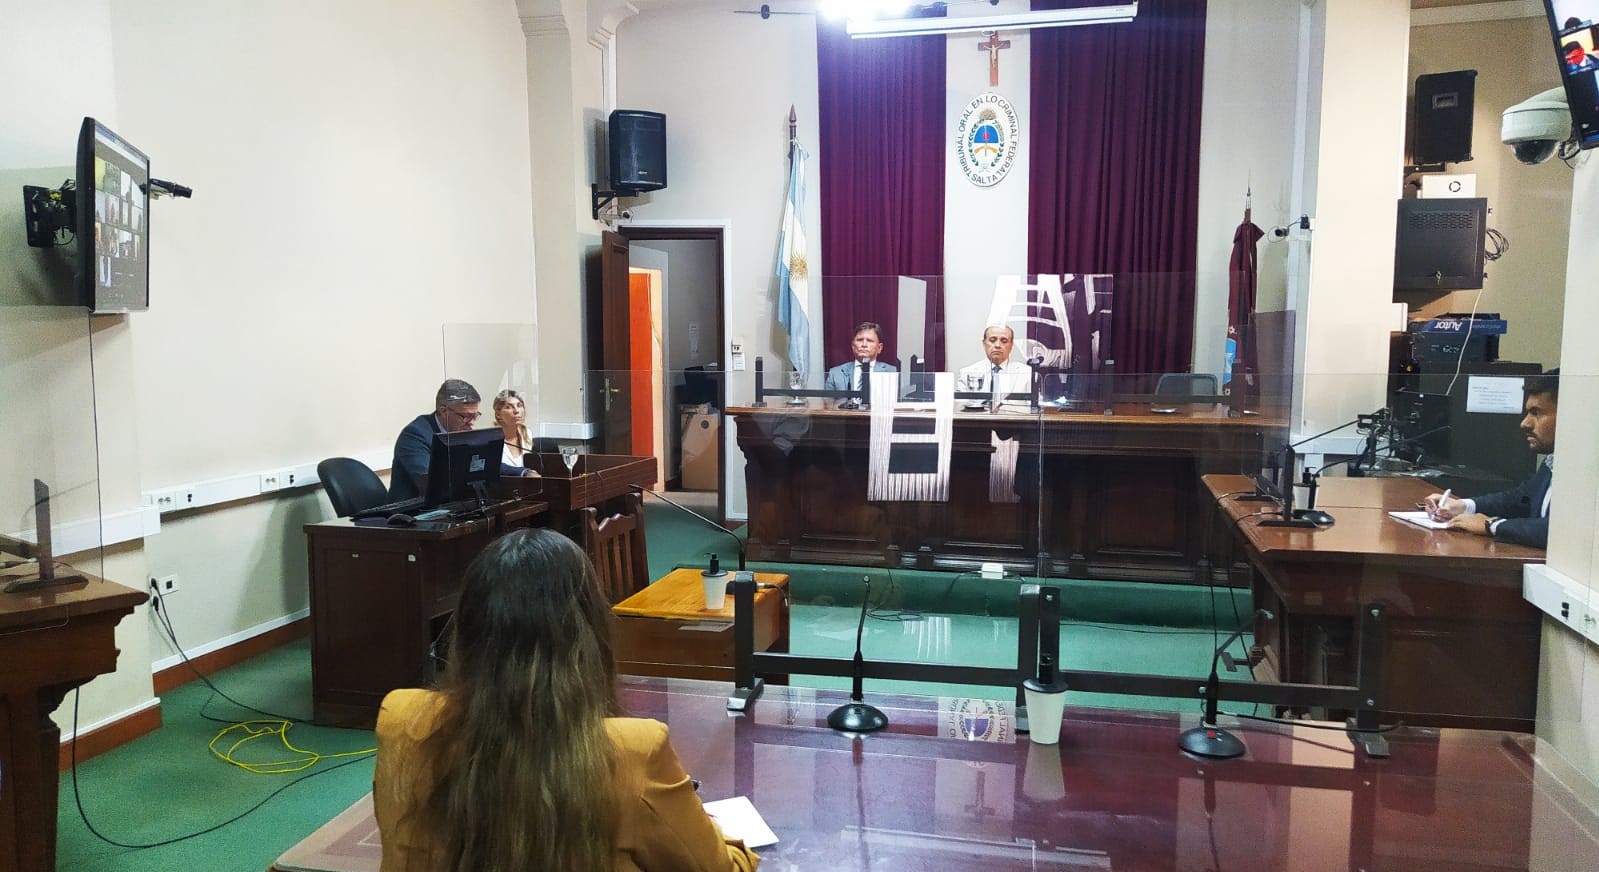 El Tribunal Oral Federal N°1 de Salta condenó a los imputados a penas de entre 3 y 16 años de prisión. - Foto: Sebastián Rodríguez / Ministerio Público Fiscal